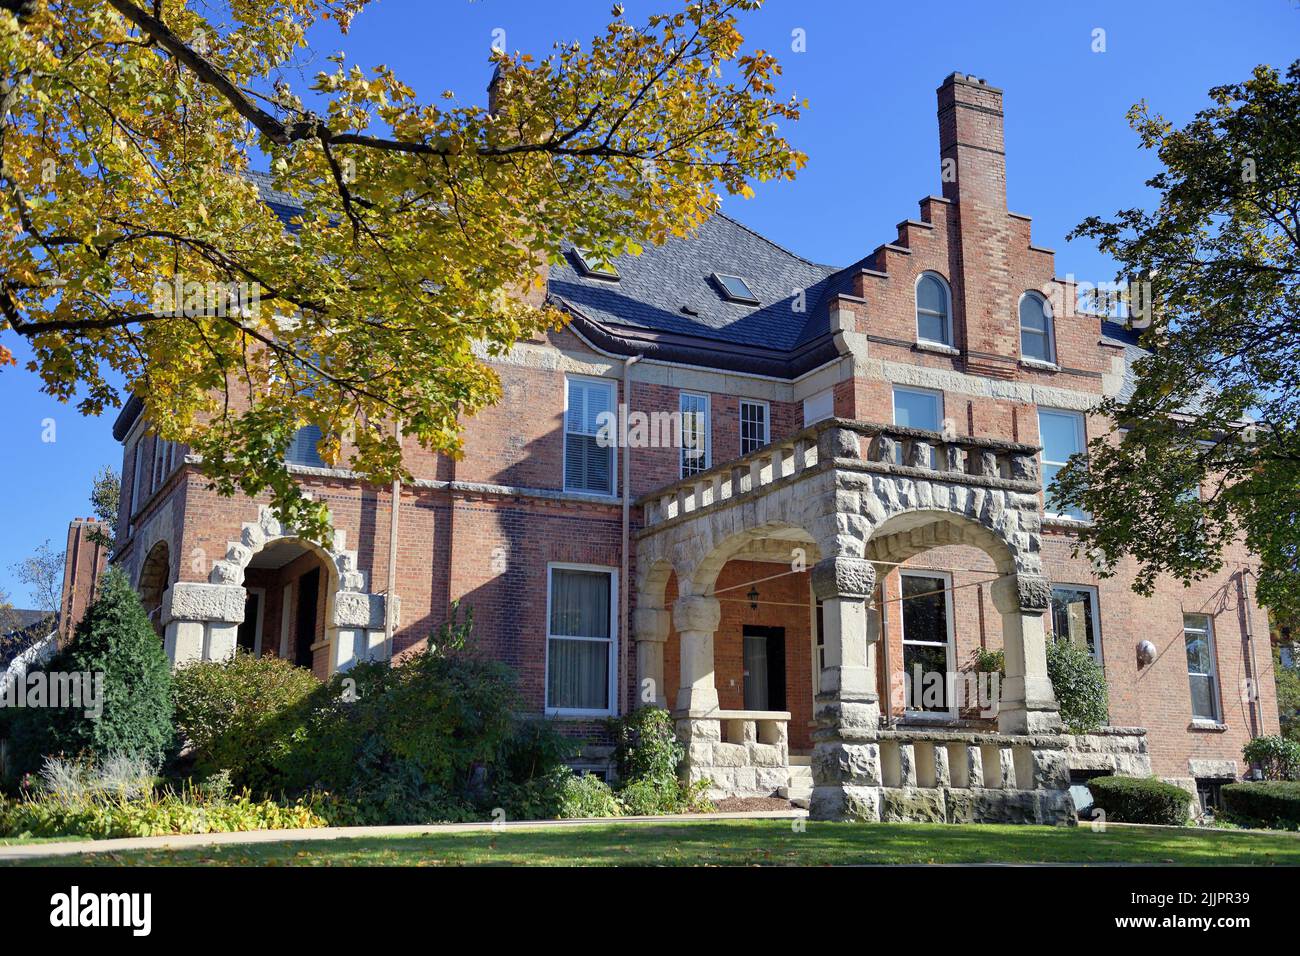 Hinsdale, Illinois, EE.UU. Gran mansión en un entorno suburbano exclusivo de Chicago. La estructura representa una imagen de la vida rica. Foto de stock